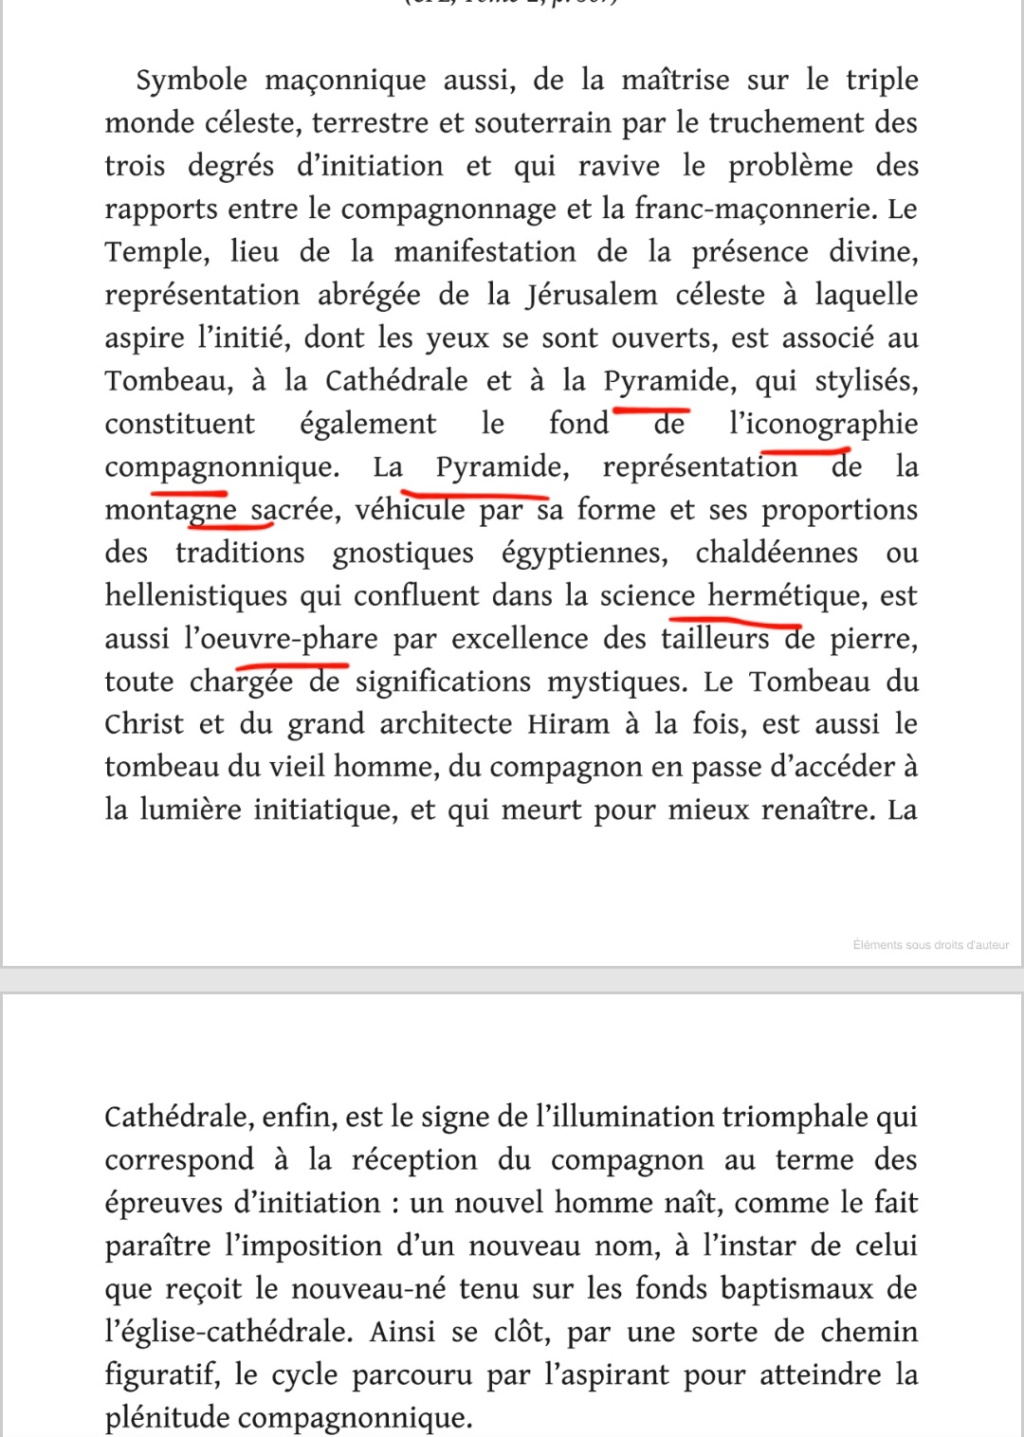 La franc-maçonnerie, la Gnose et le gnosticisme.  - Page 5 Scree551